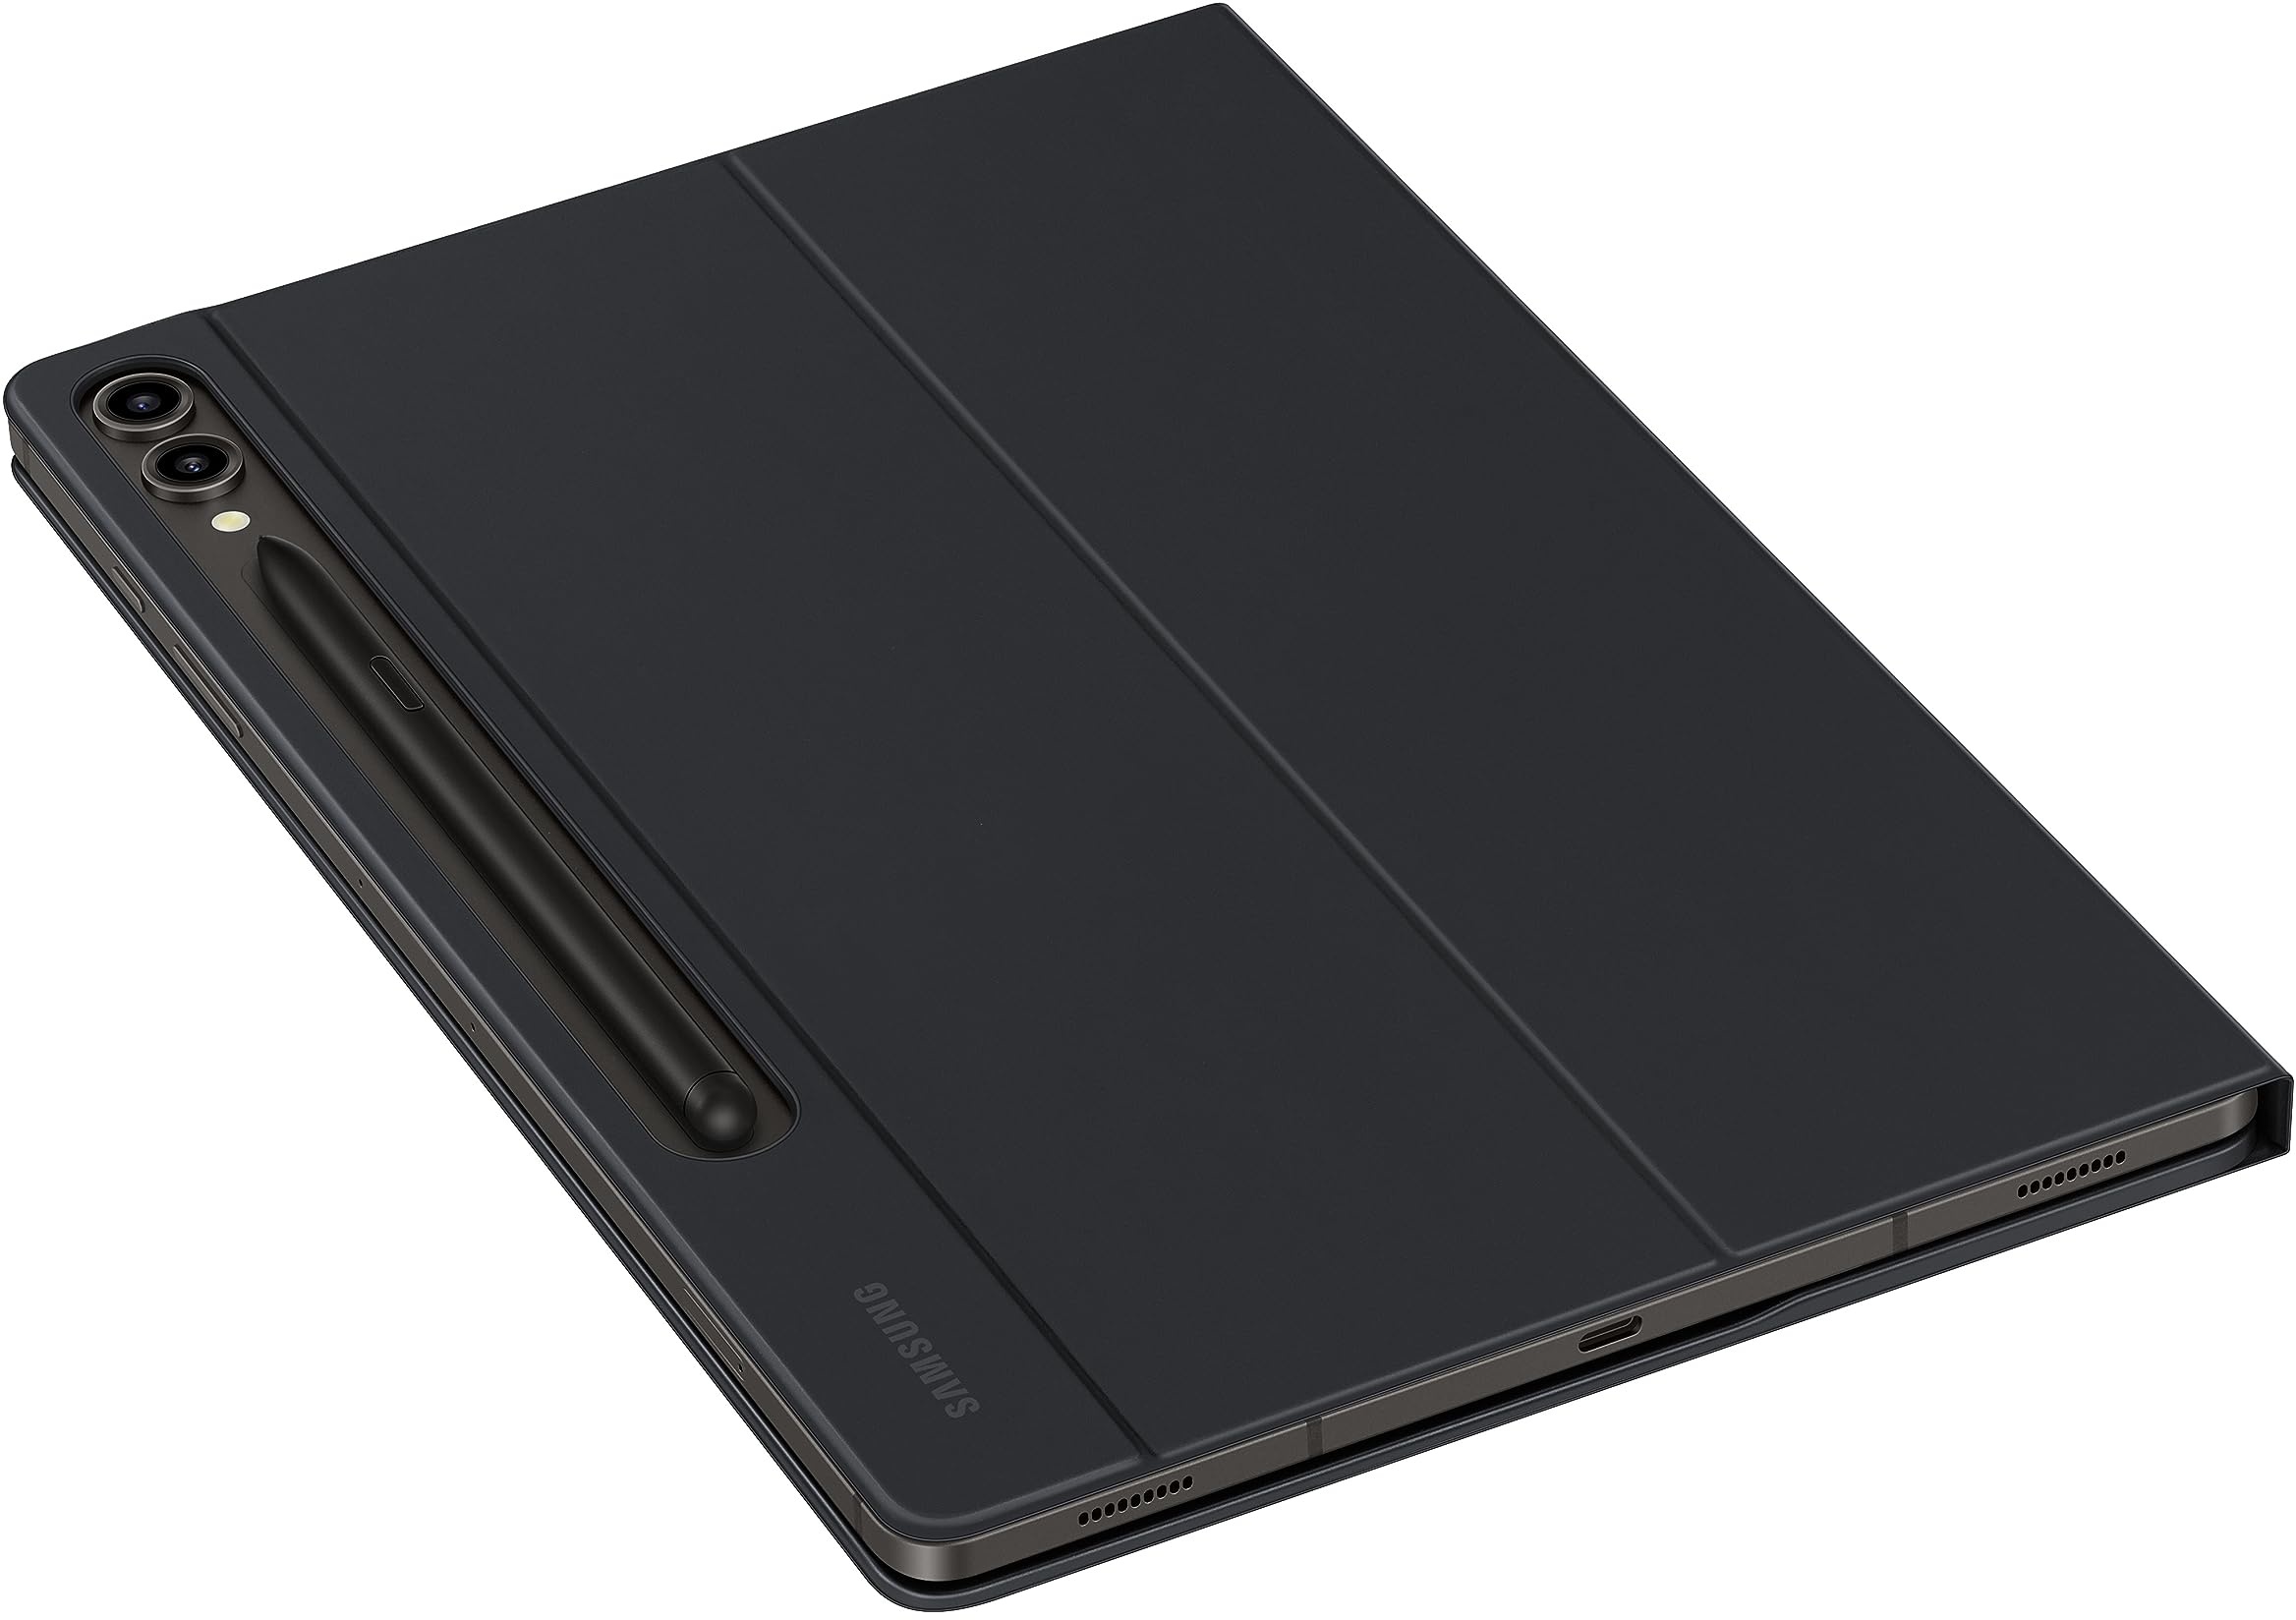 Samsung Book Cover Keyboard Slim EF-DX810 für das Galaxy Tab S9+ / Tab S9 FE+, Einteiliges Tablet Cover, Tablet-Hülle, schlankes, leichtes Design, QWERTZ-Tastatur, POGO-Pin, S Pen Fach, Black